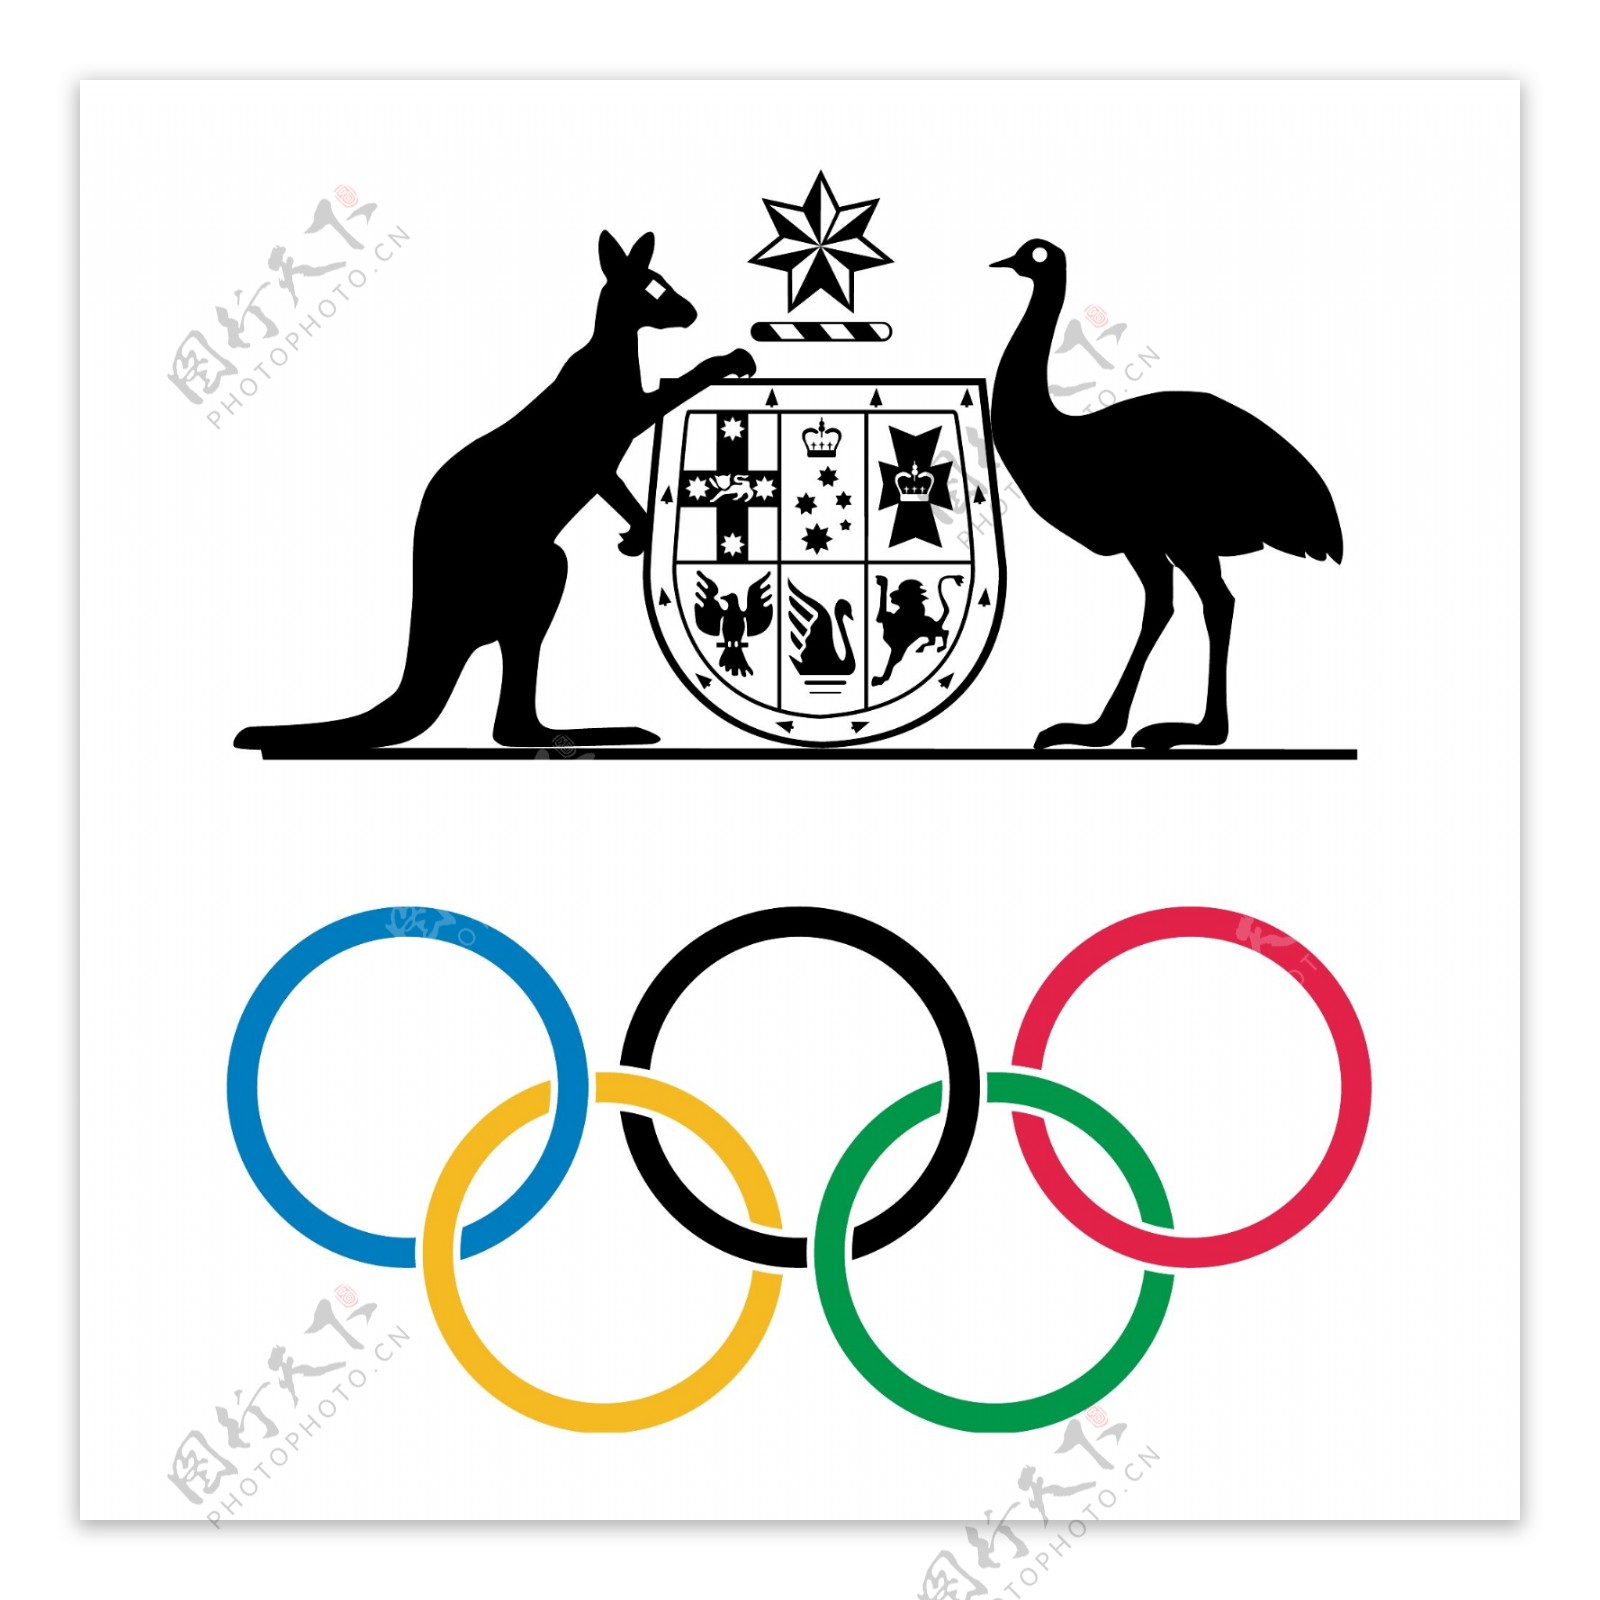 澳大利亚奥林匹克委员会